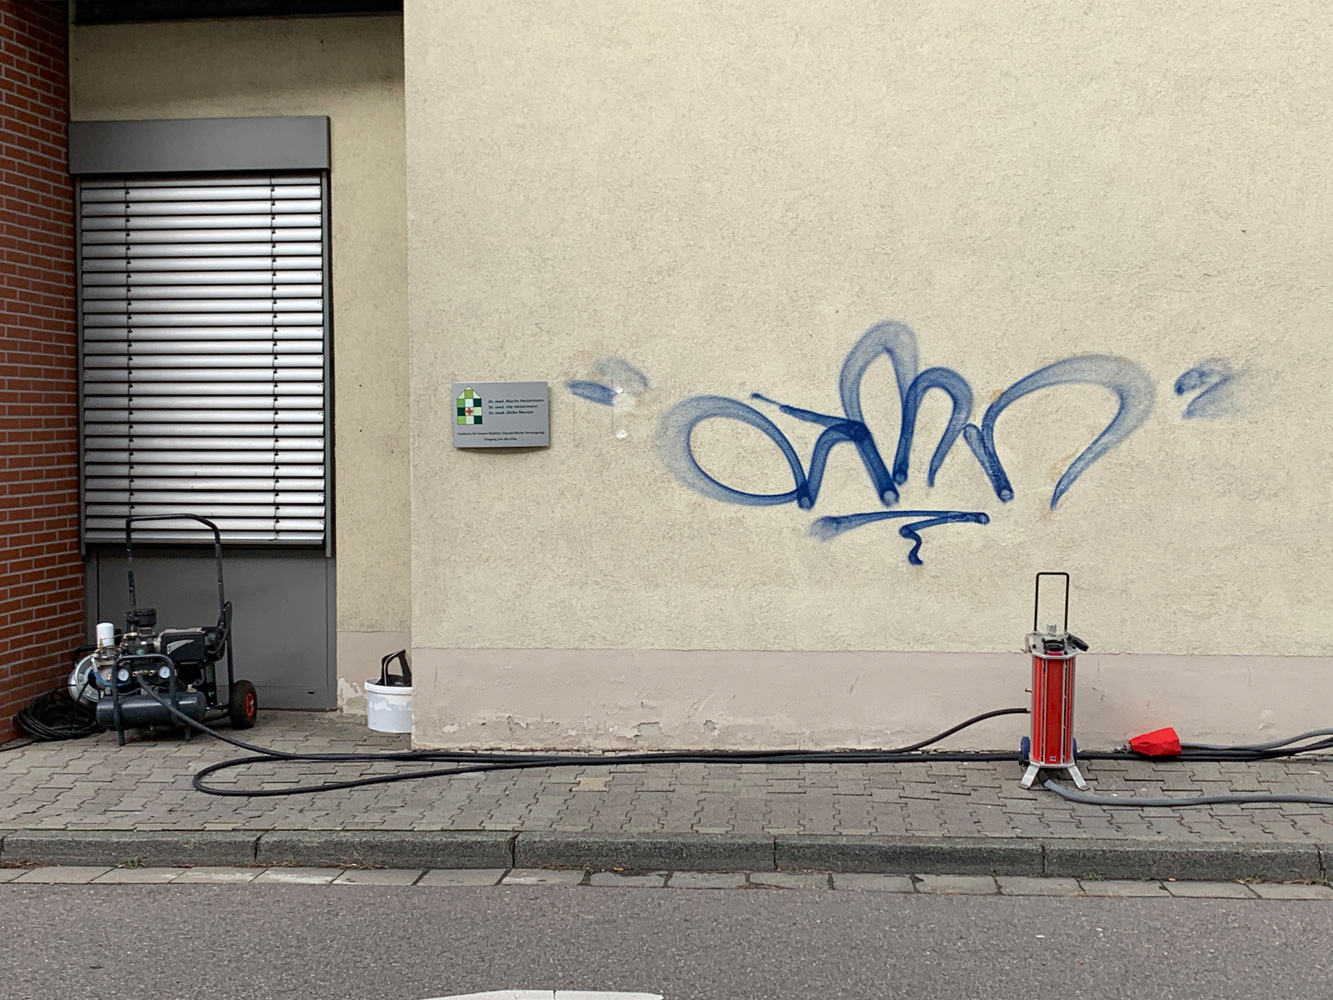 Graffitientfernung Sandstrahltechnik